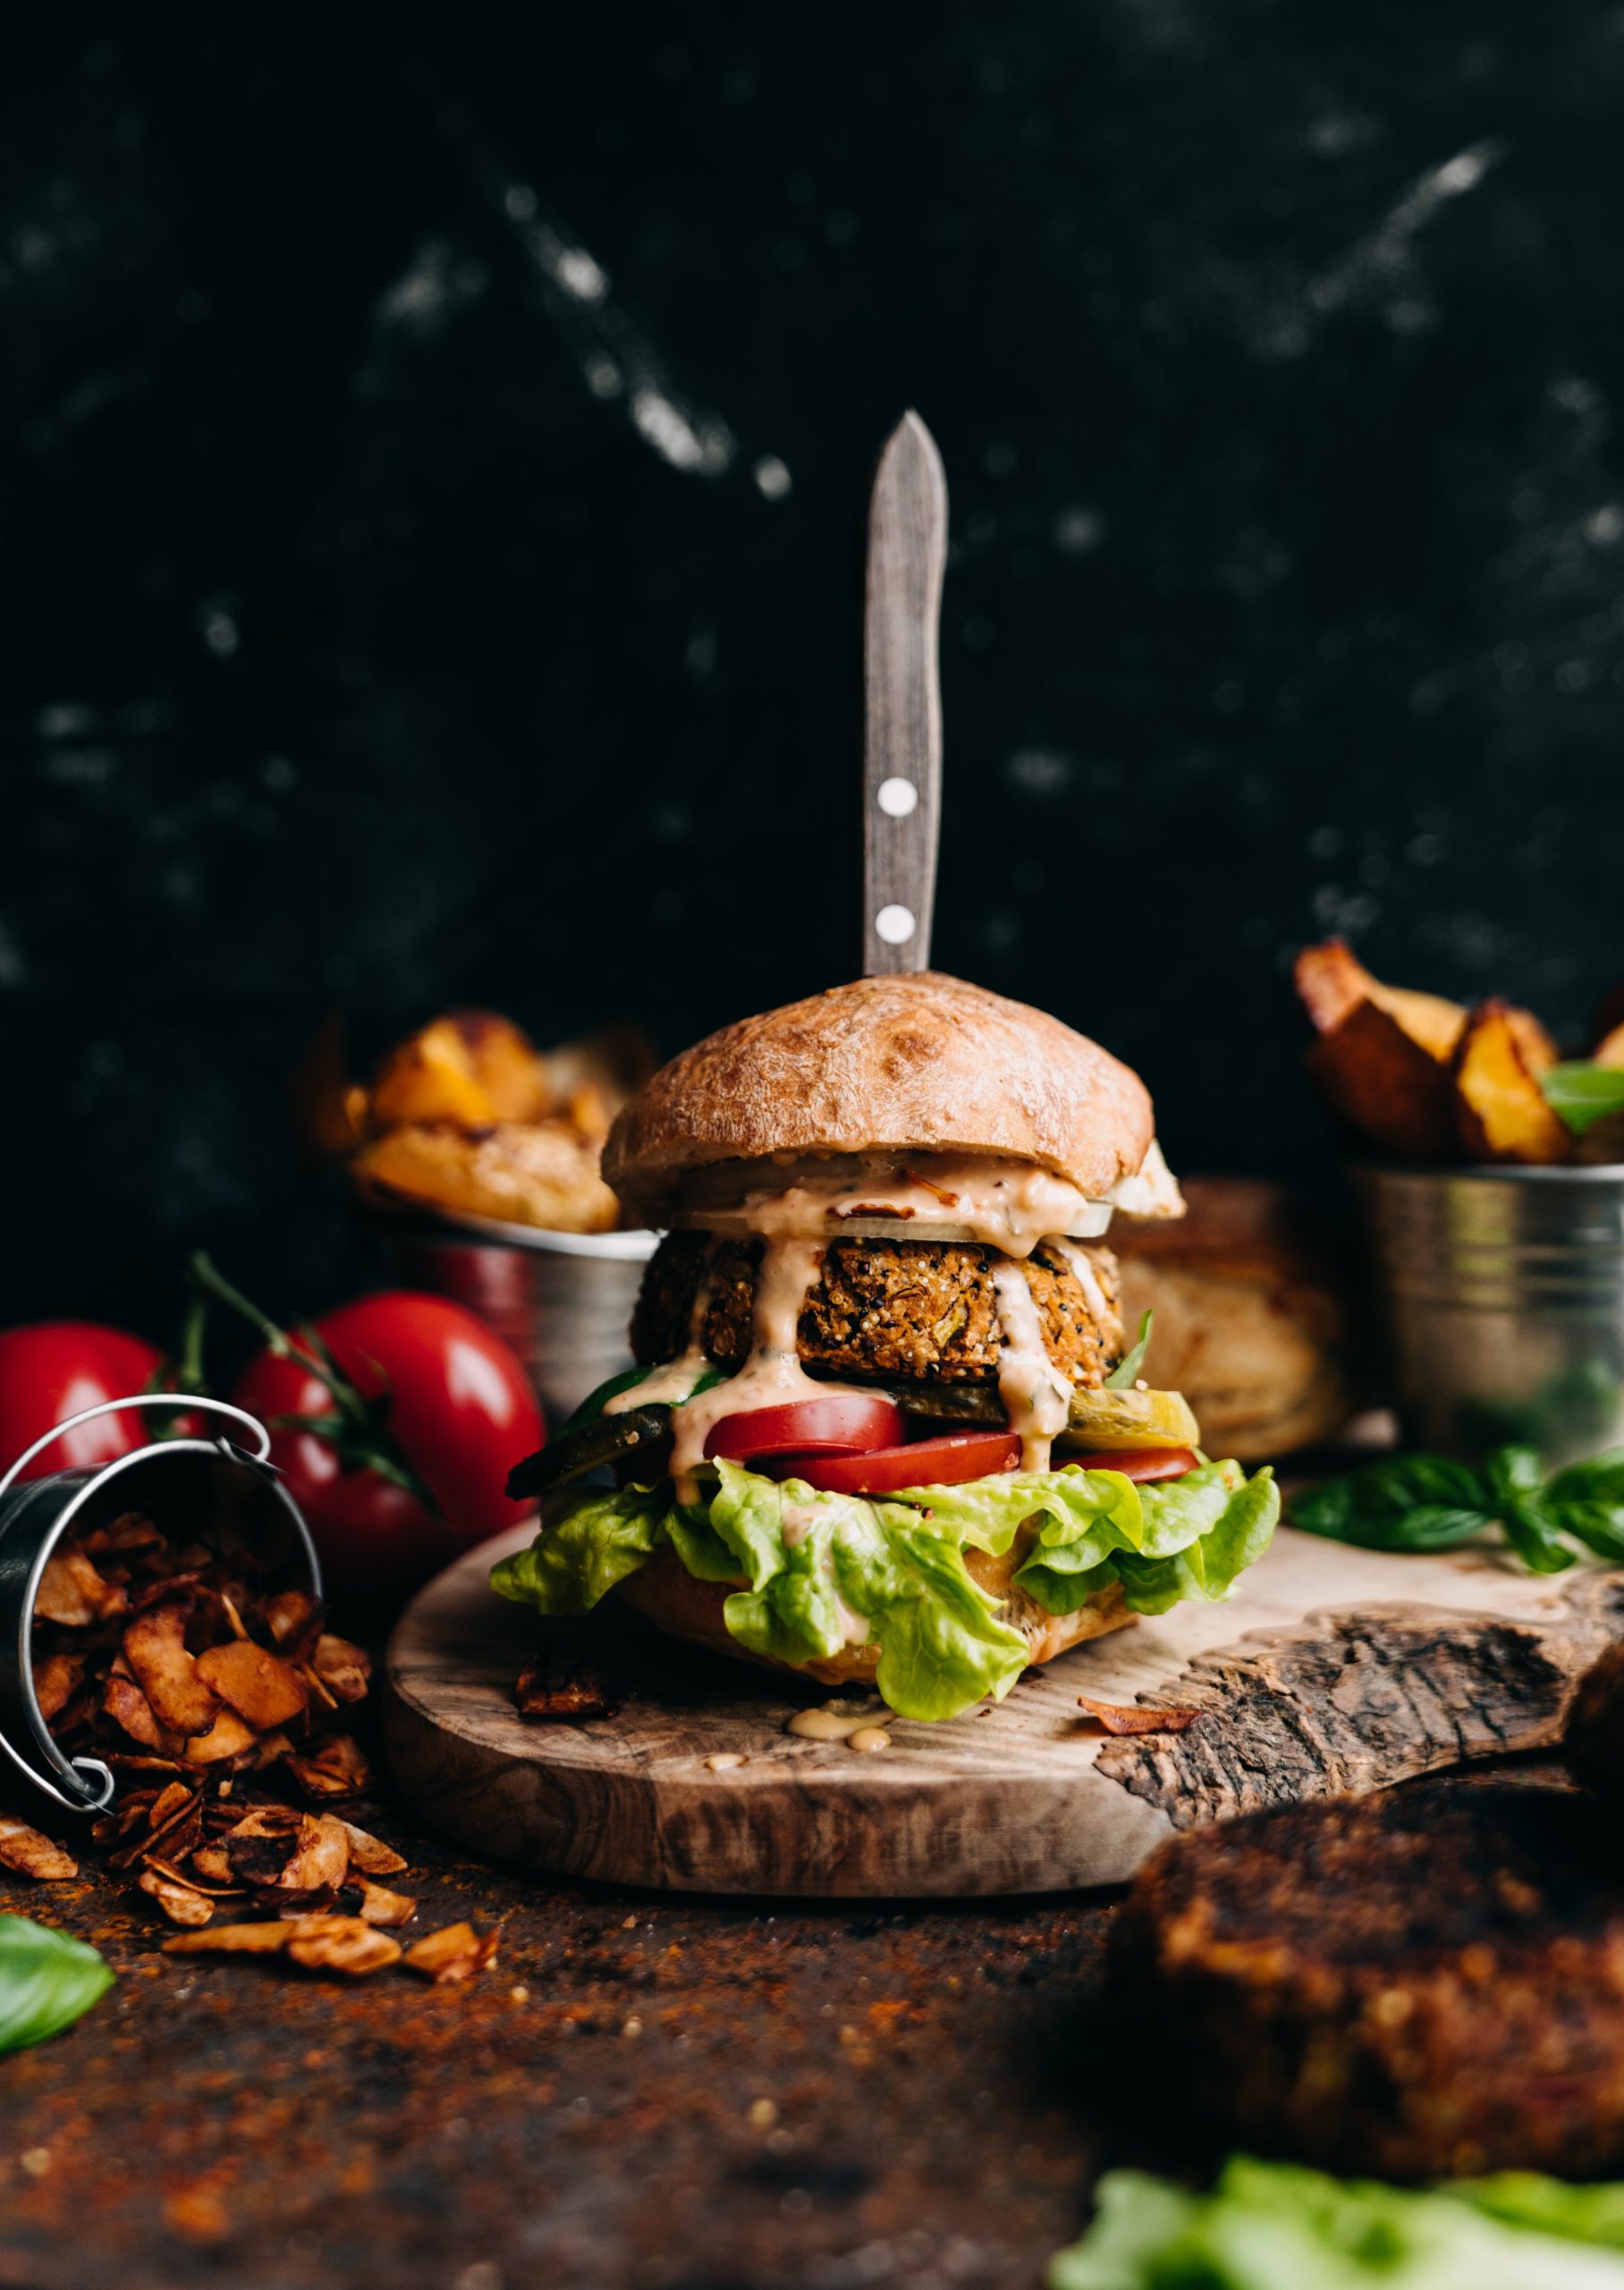  Essen, das Freude macht: Veggie-Burger von Rebekka Trunz. Foto: Rebekka Trunz